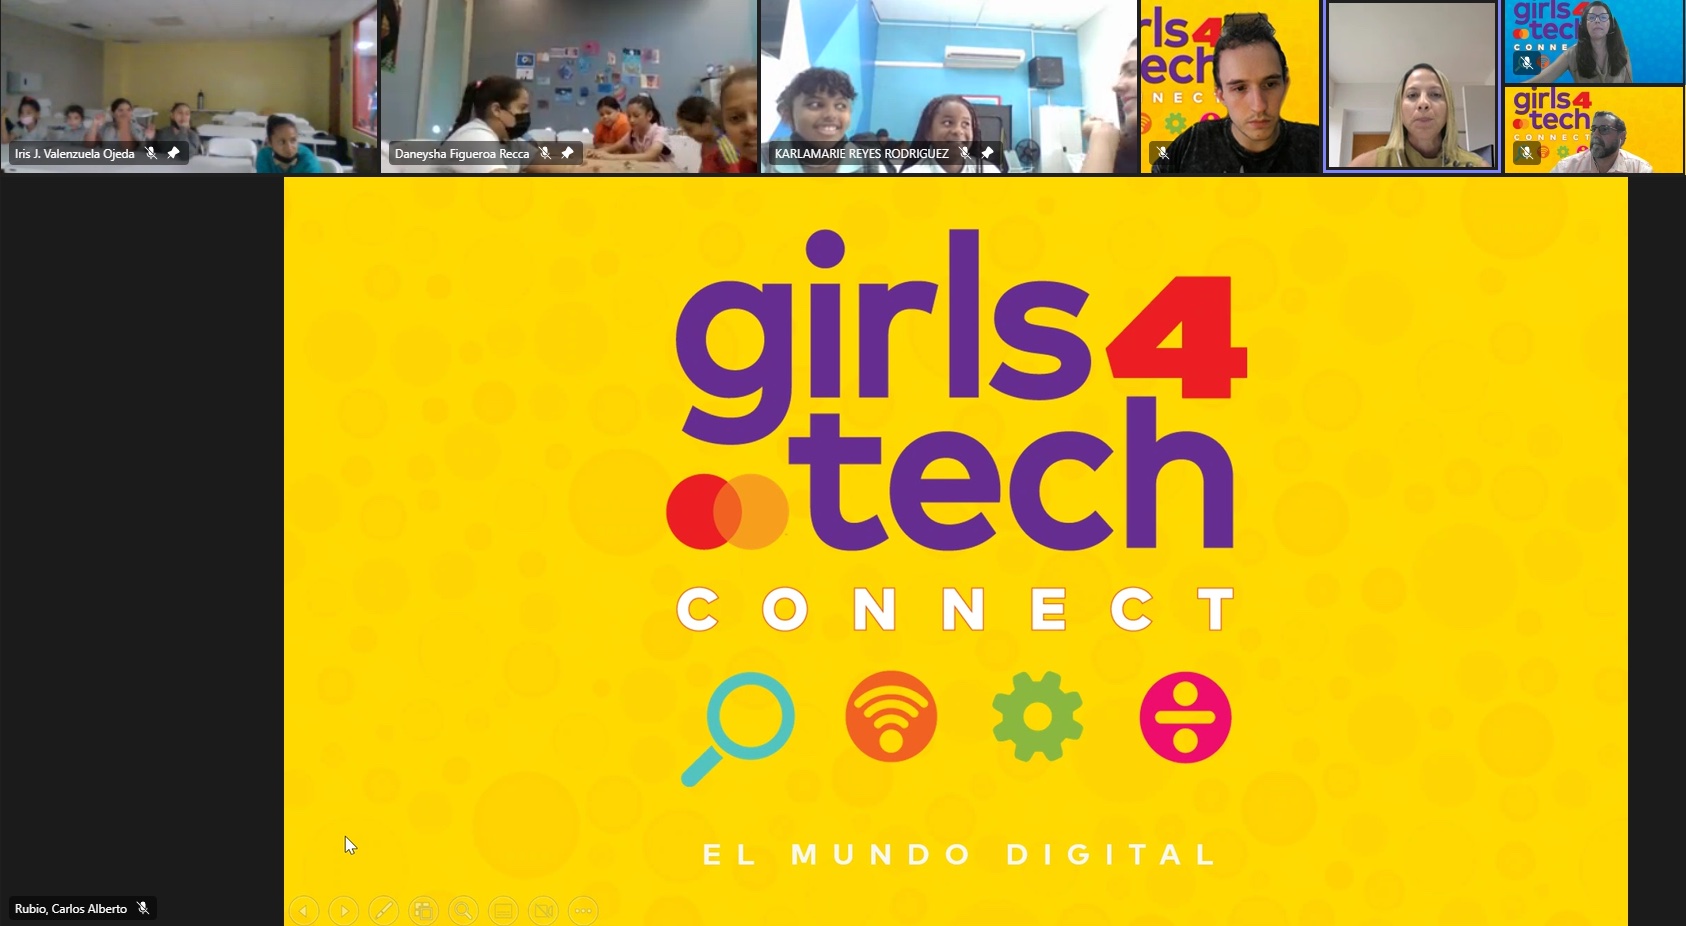 Mastercard promueve un futuro más equitativo en el Caribe con el programa educativo Girls4Tech